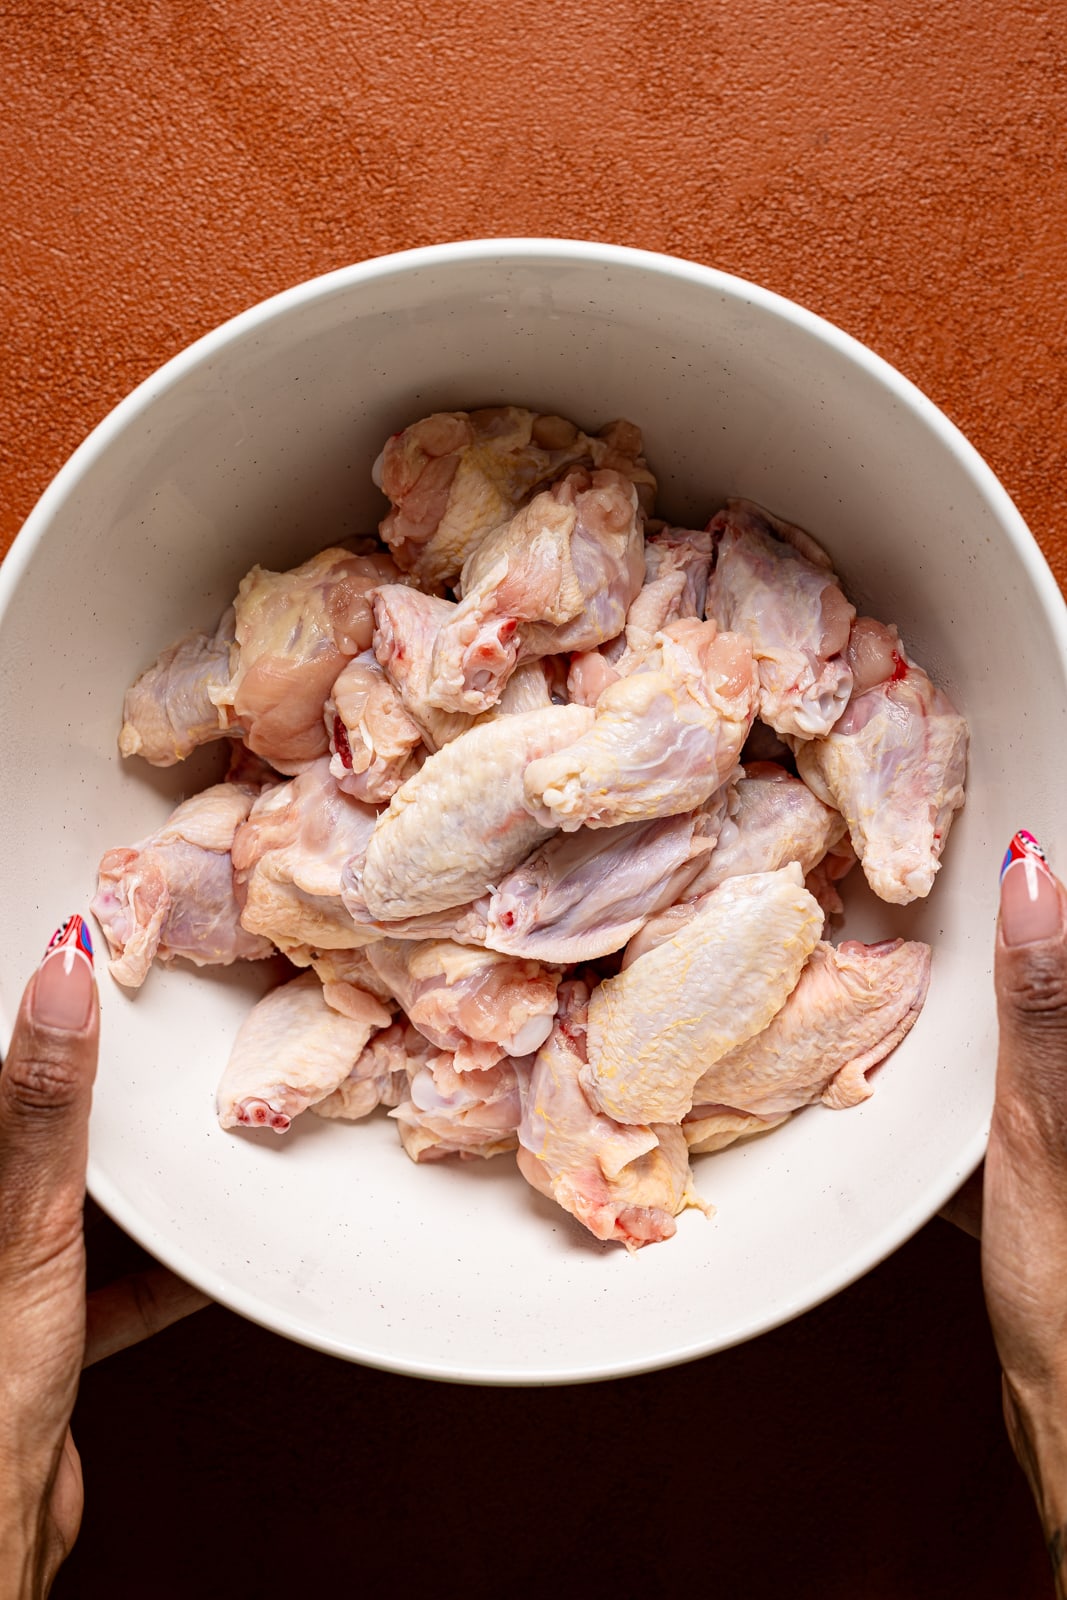 Freshly clean chicken wings in a bowl.